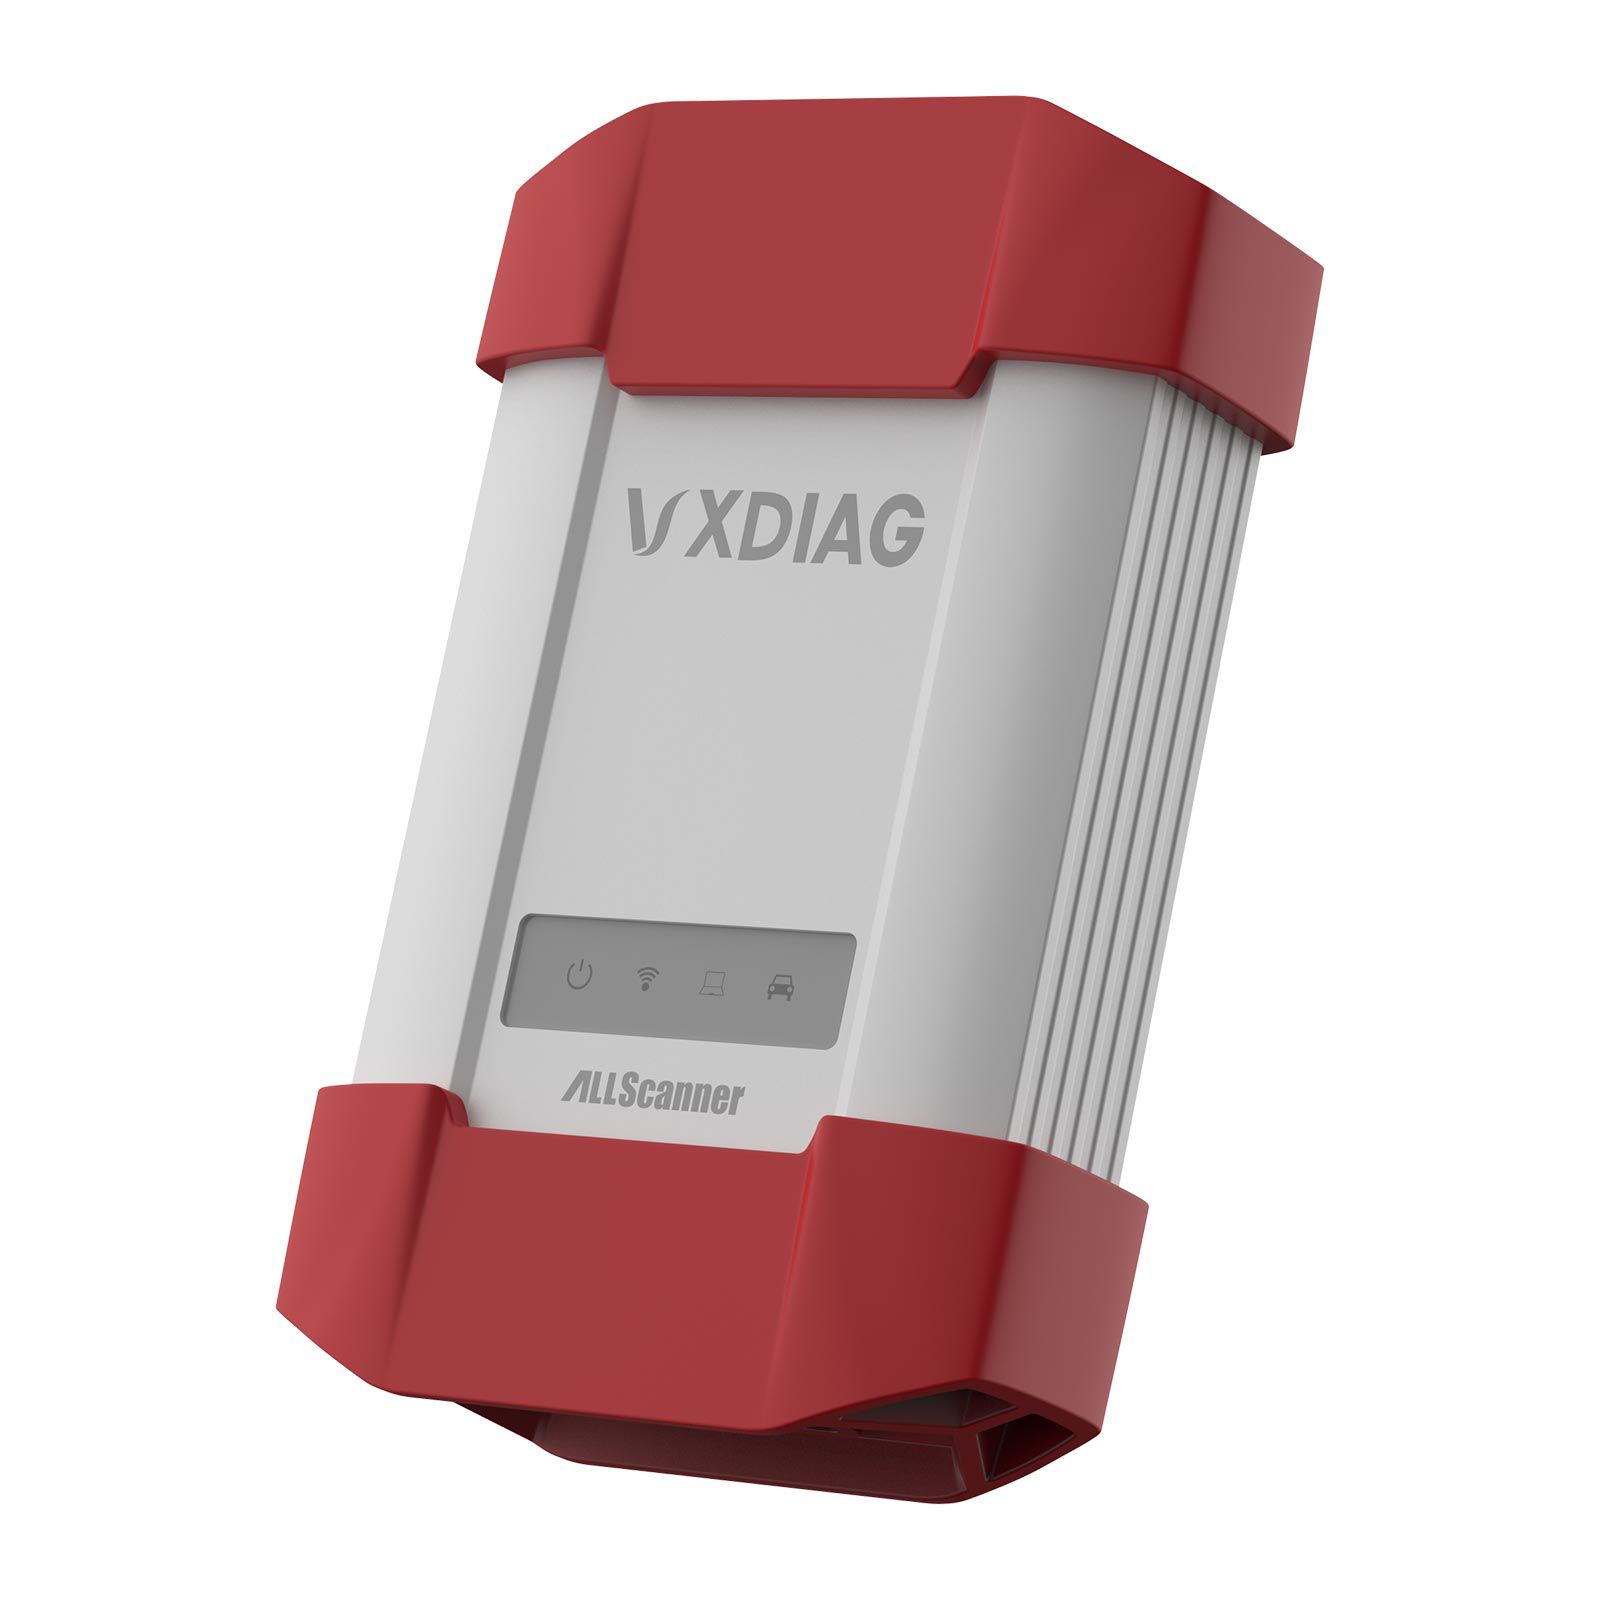 WIFI VXDIAG MULTI Diagnostic Tool for Toyota Honda Land Rover/Jaguar JLR & Volvo 4 IN 1 Scanner